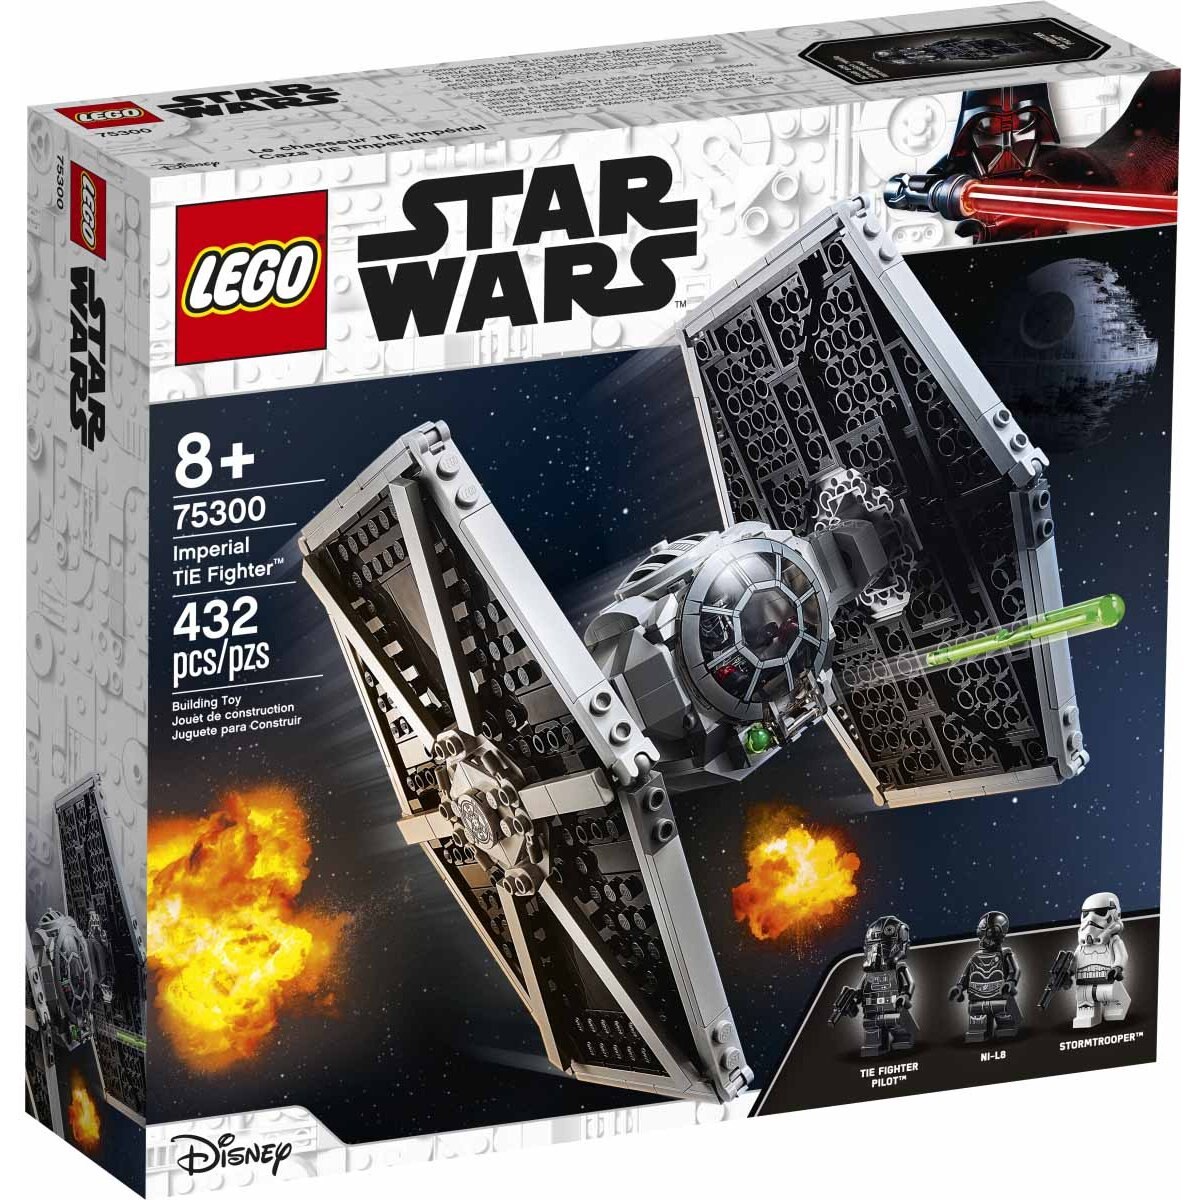 Lego Star Wars Limited Edition tie Advanced receta nuevo embalaje original nave espacial 